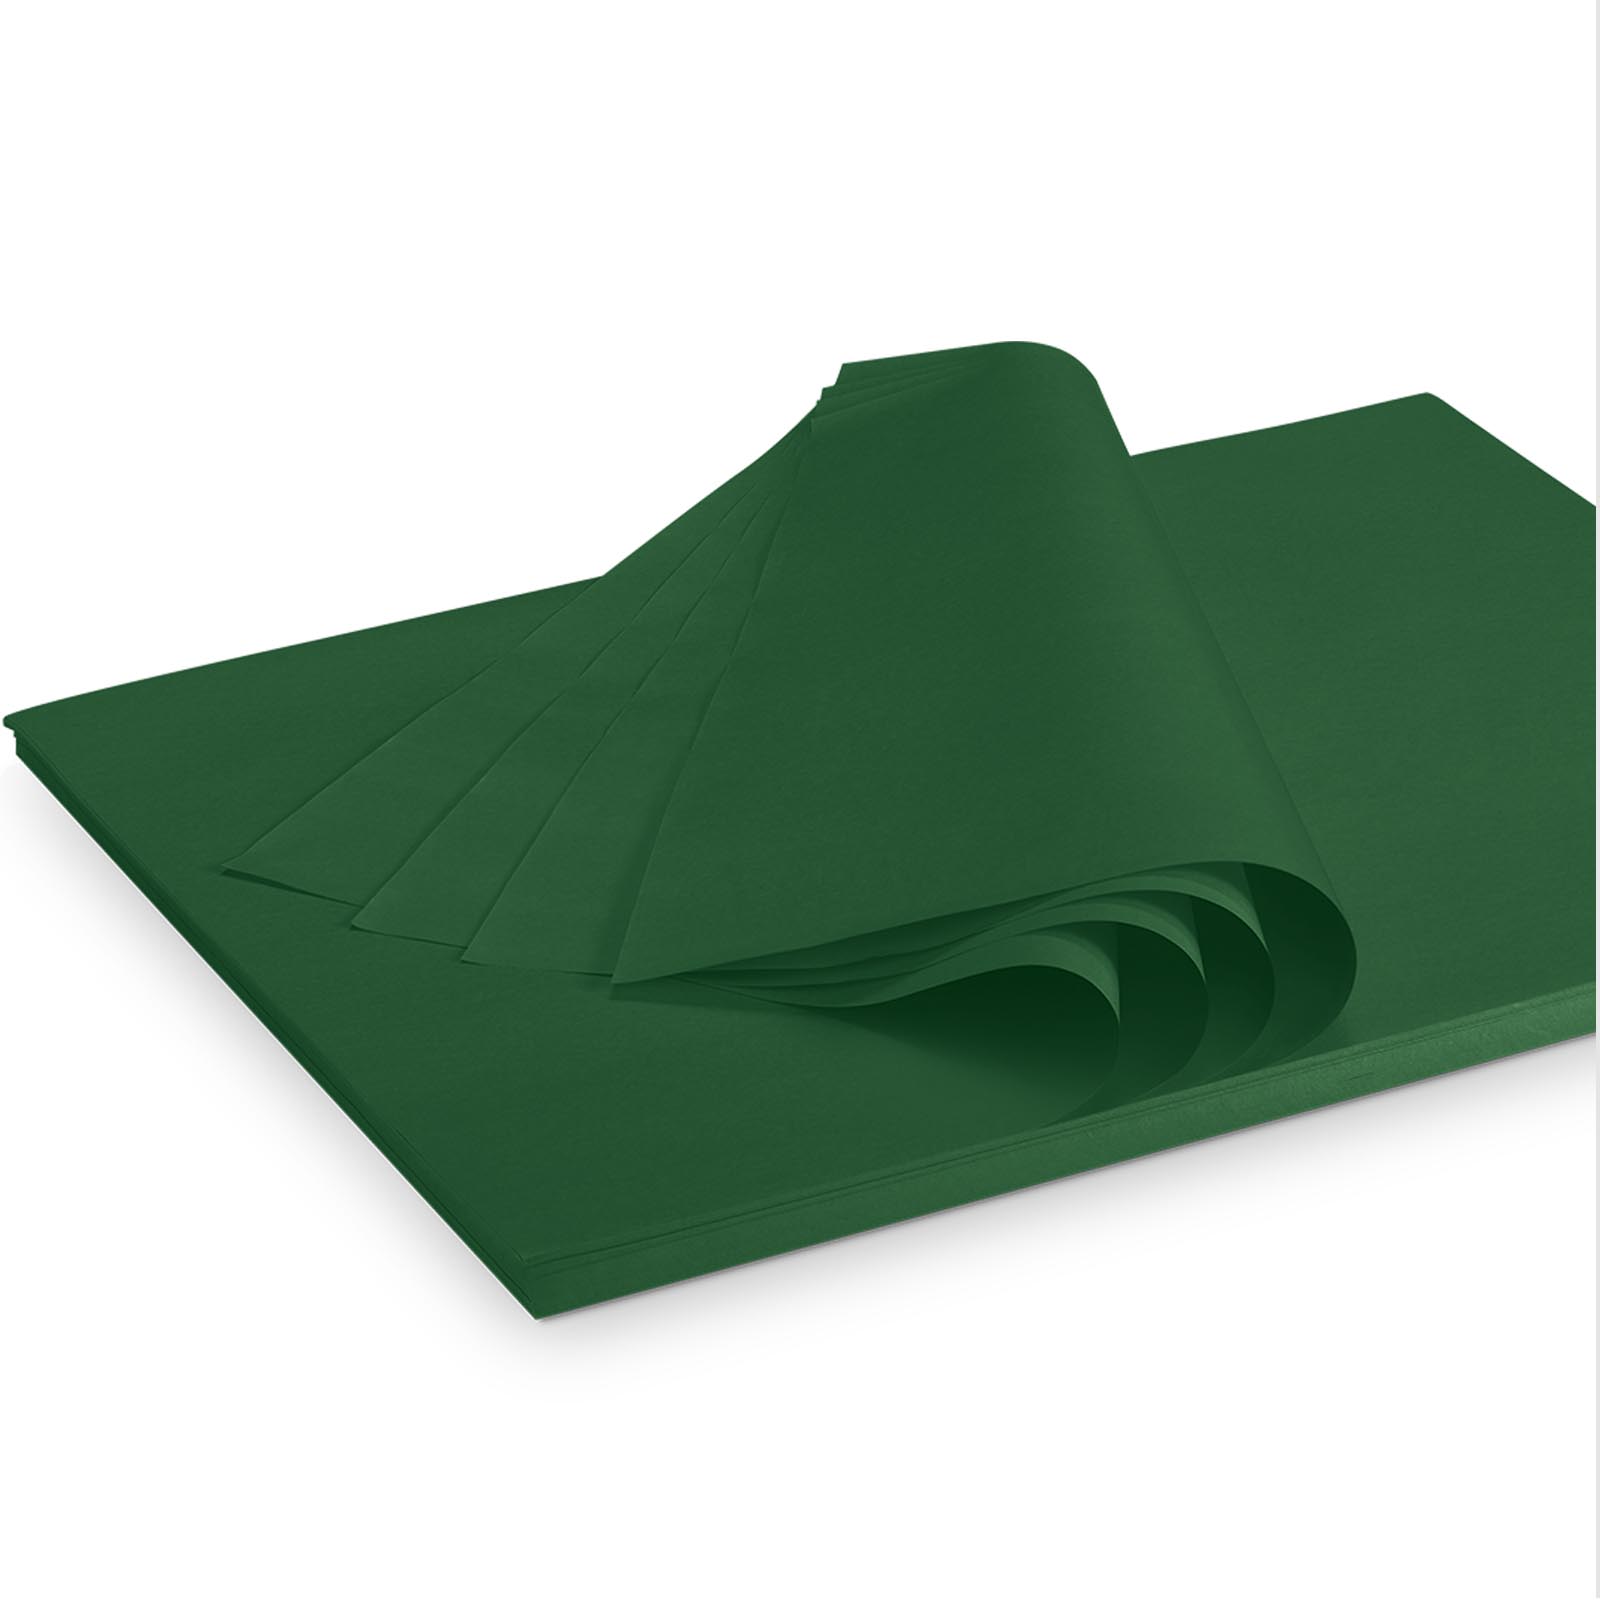 Seidenpapier grün 375x500mm  35g/m²,300 Bogen/ Karton=2kg